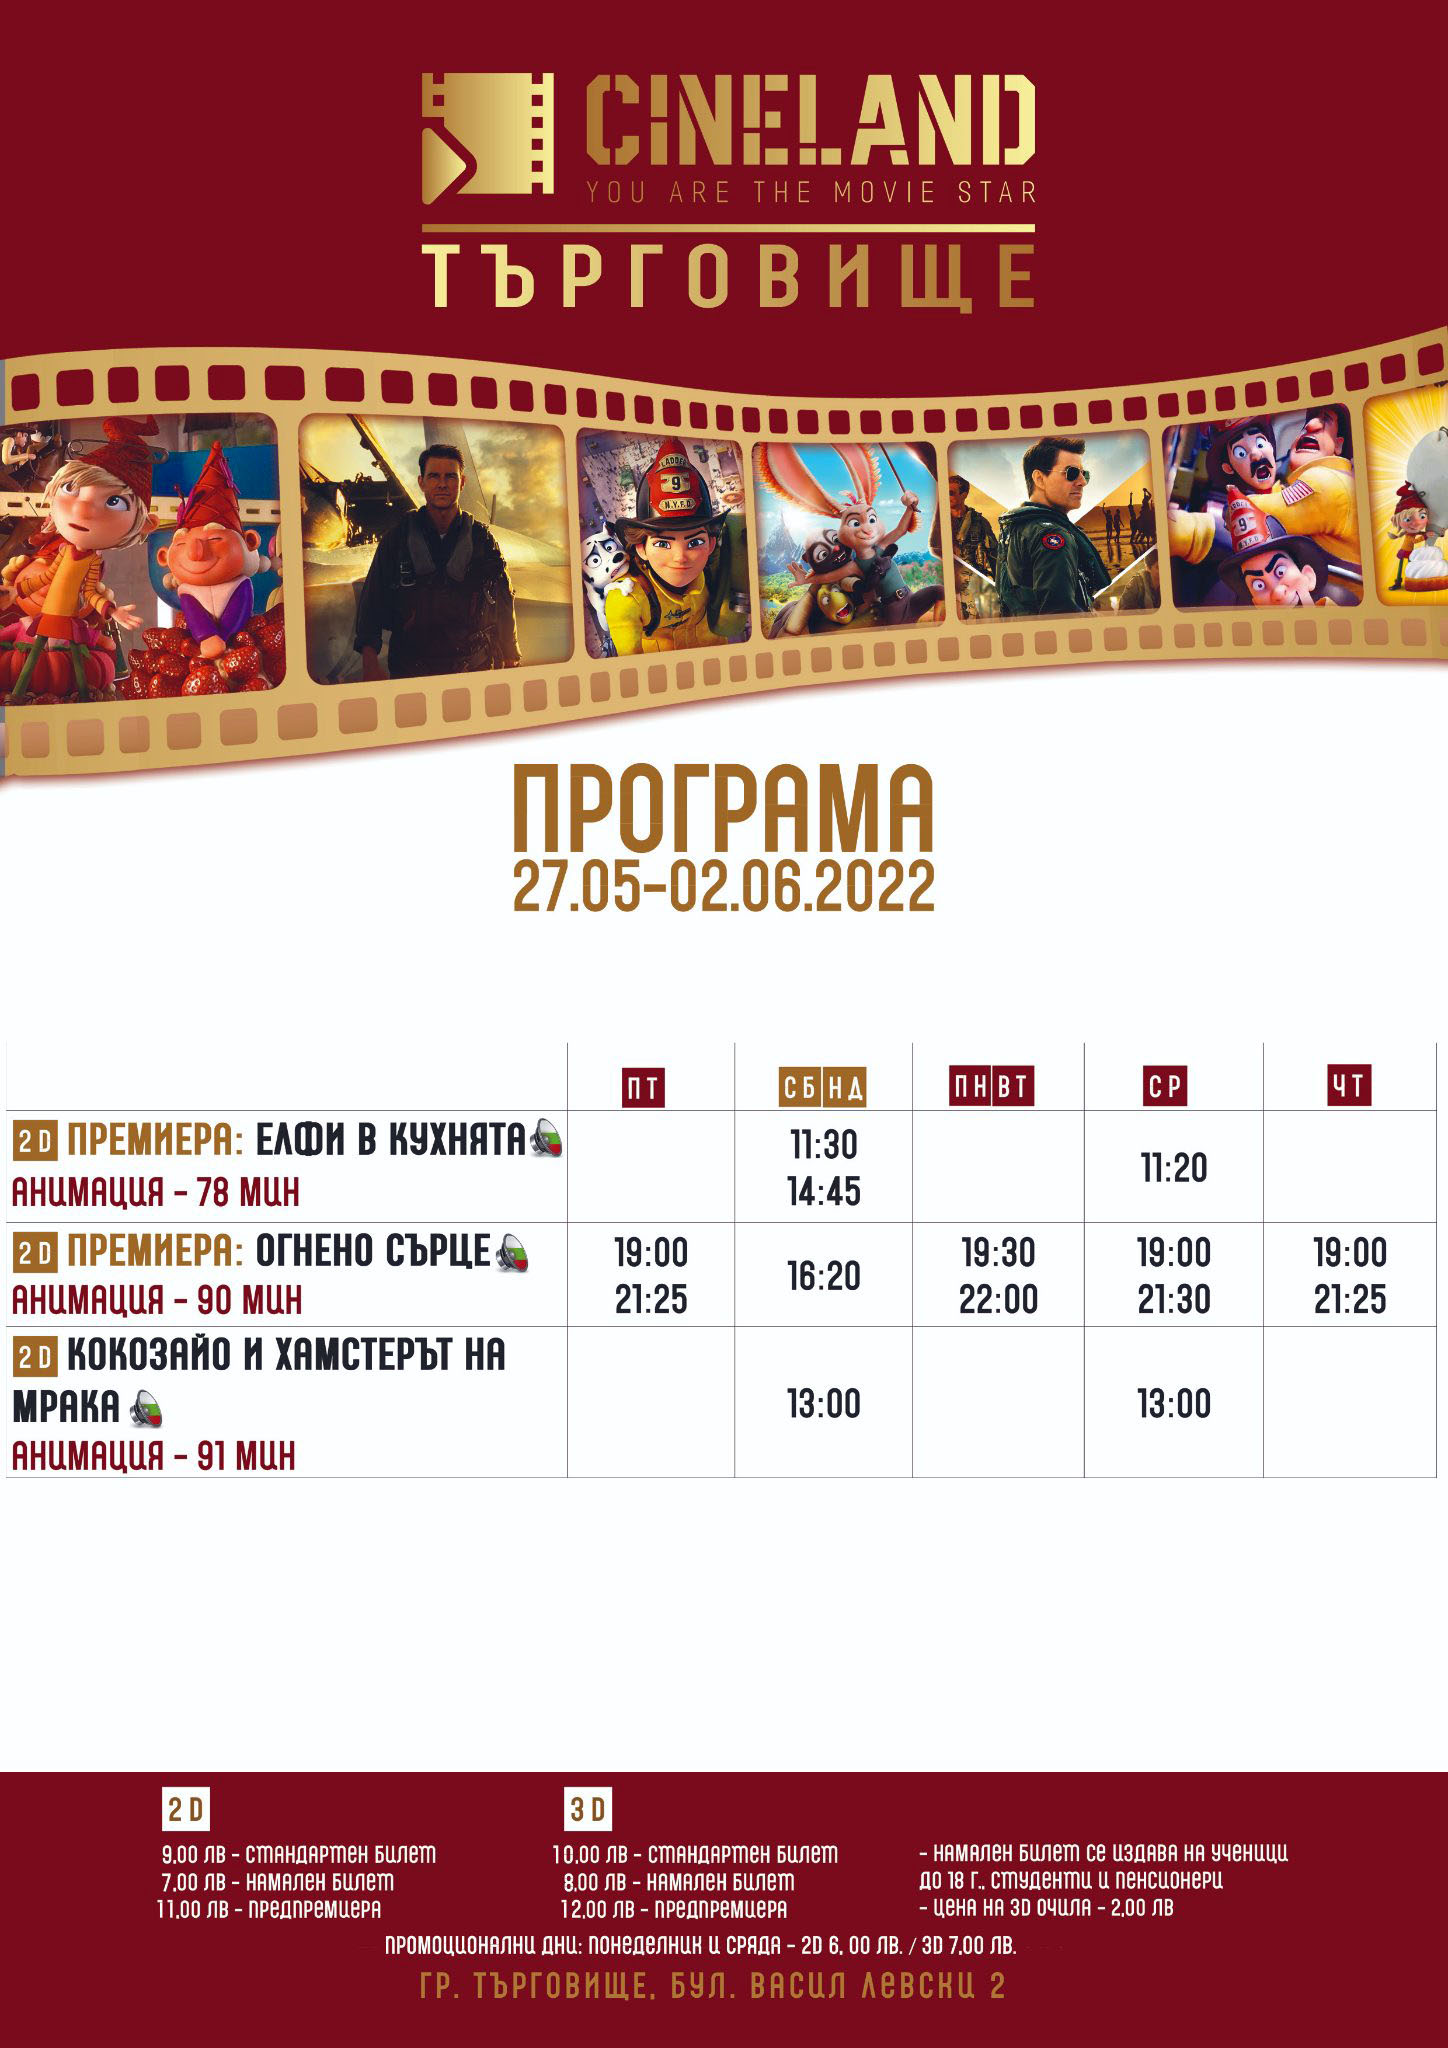 Cineland Търговище: Кино програма - 27.05-02.06.2022